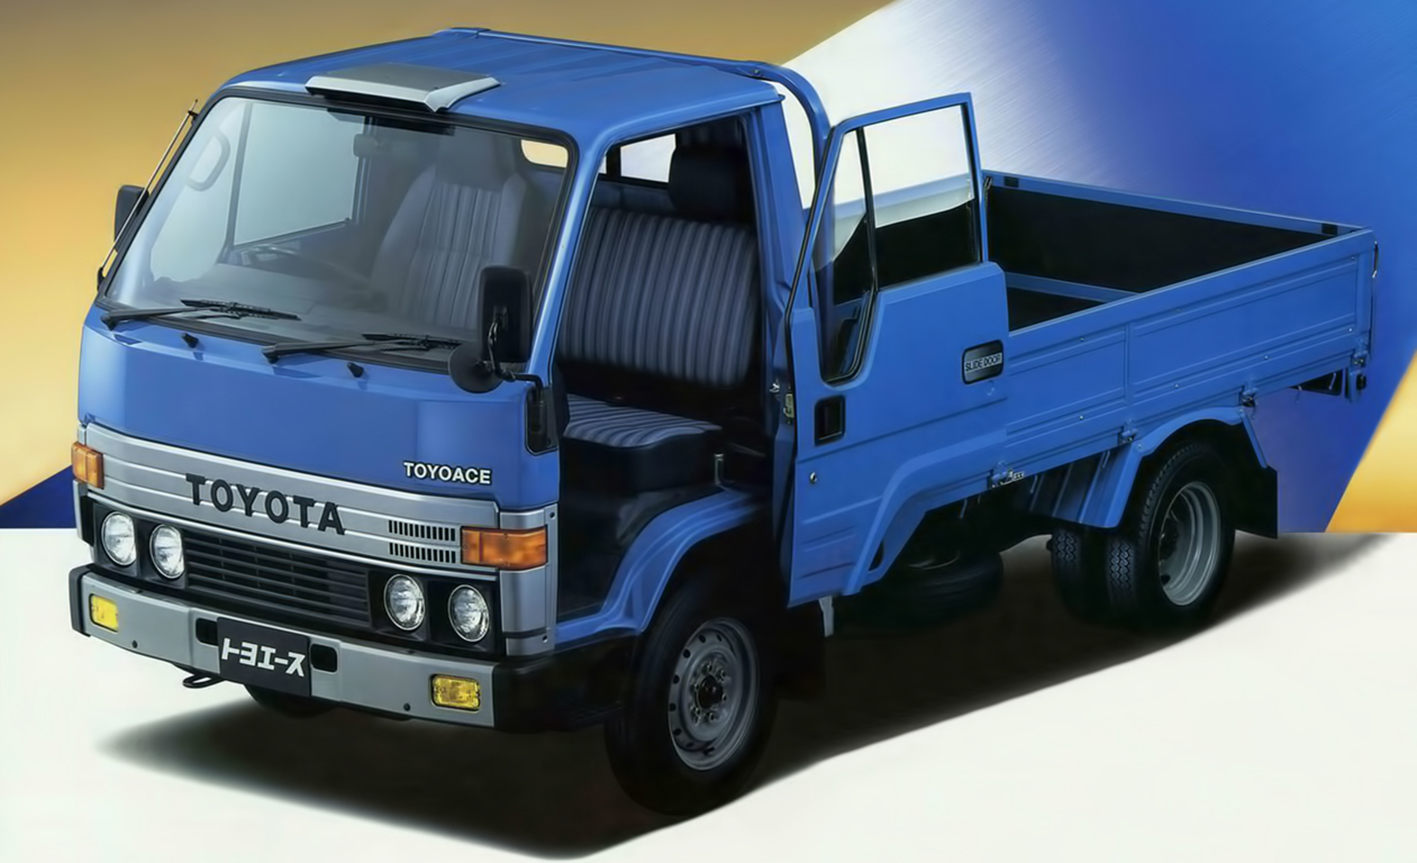 Тойоайс грузовик. Toyota TOYOACE 4wd. Toyota TOYOACE 1985. Toyota Dyna ly60. Toyota TOYOACE бортовой, 1995.